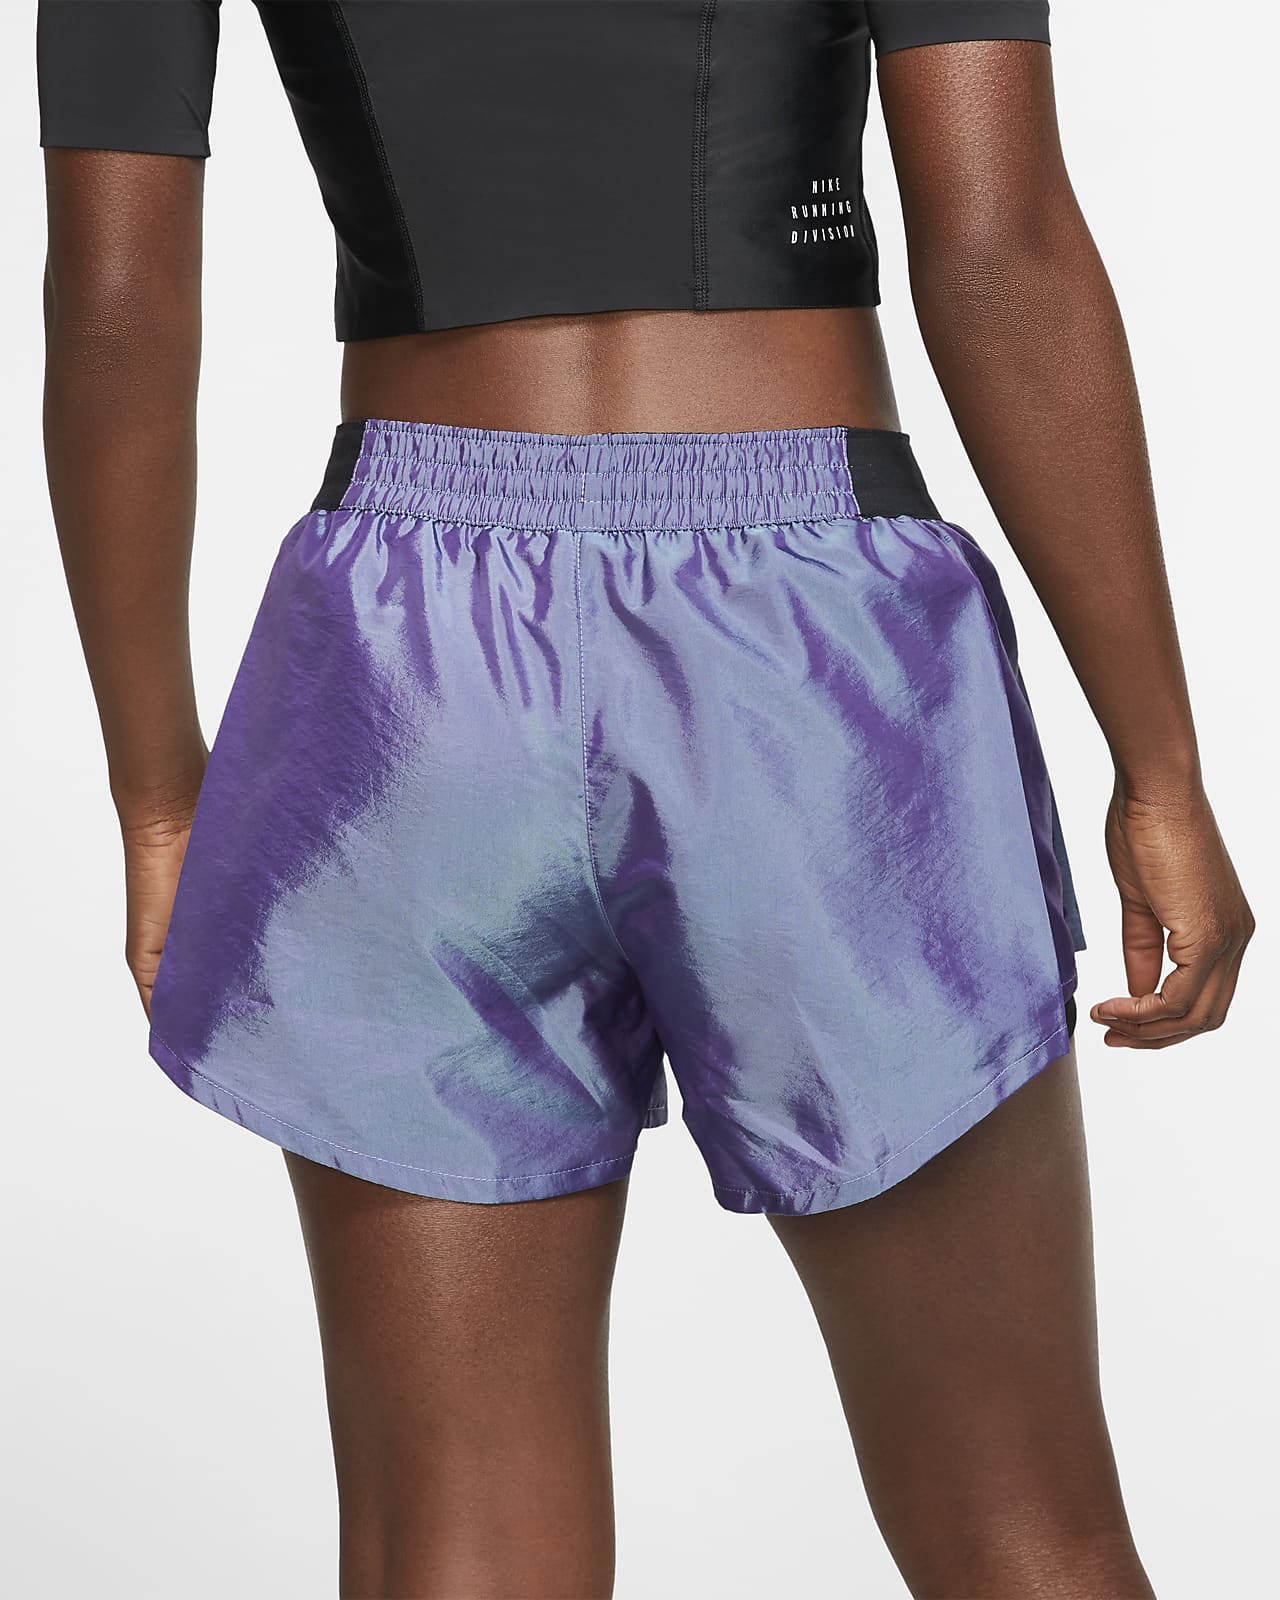 nike running shorts purple